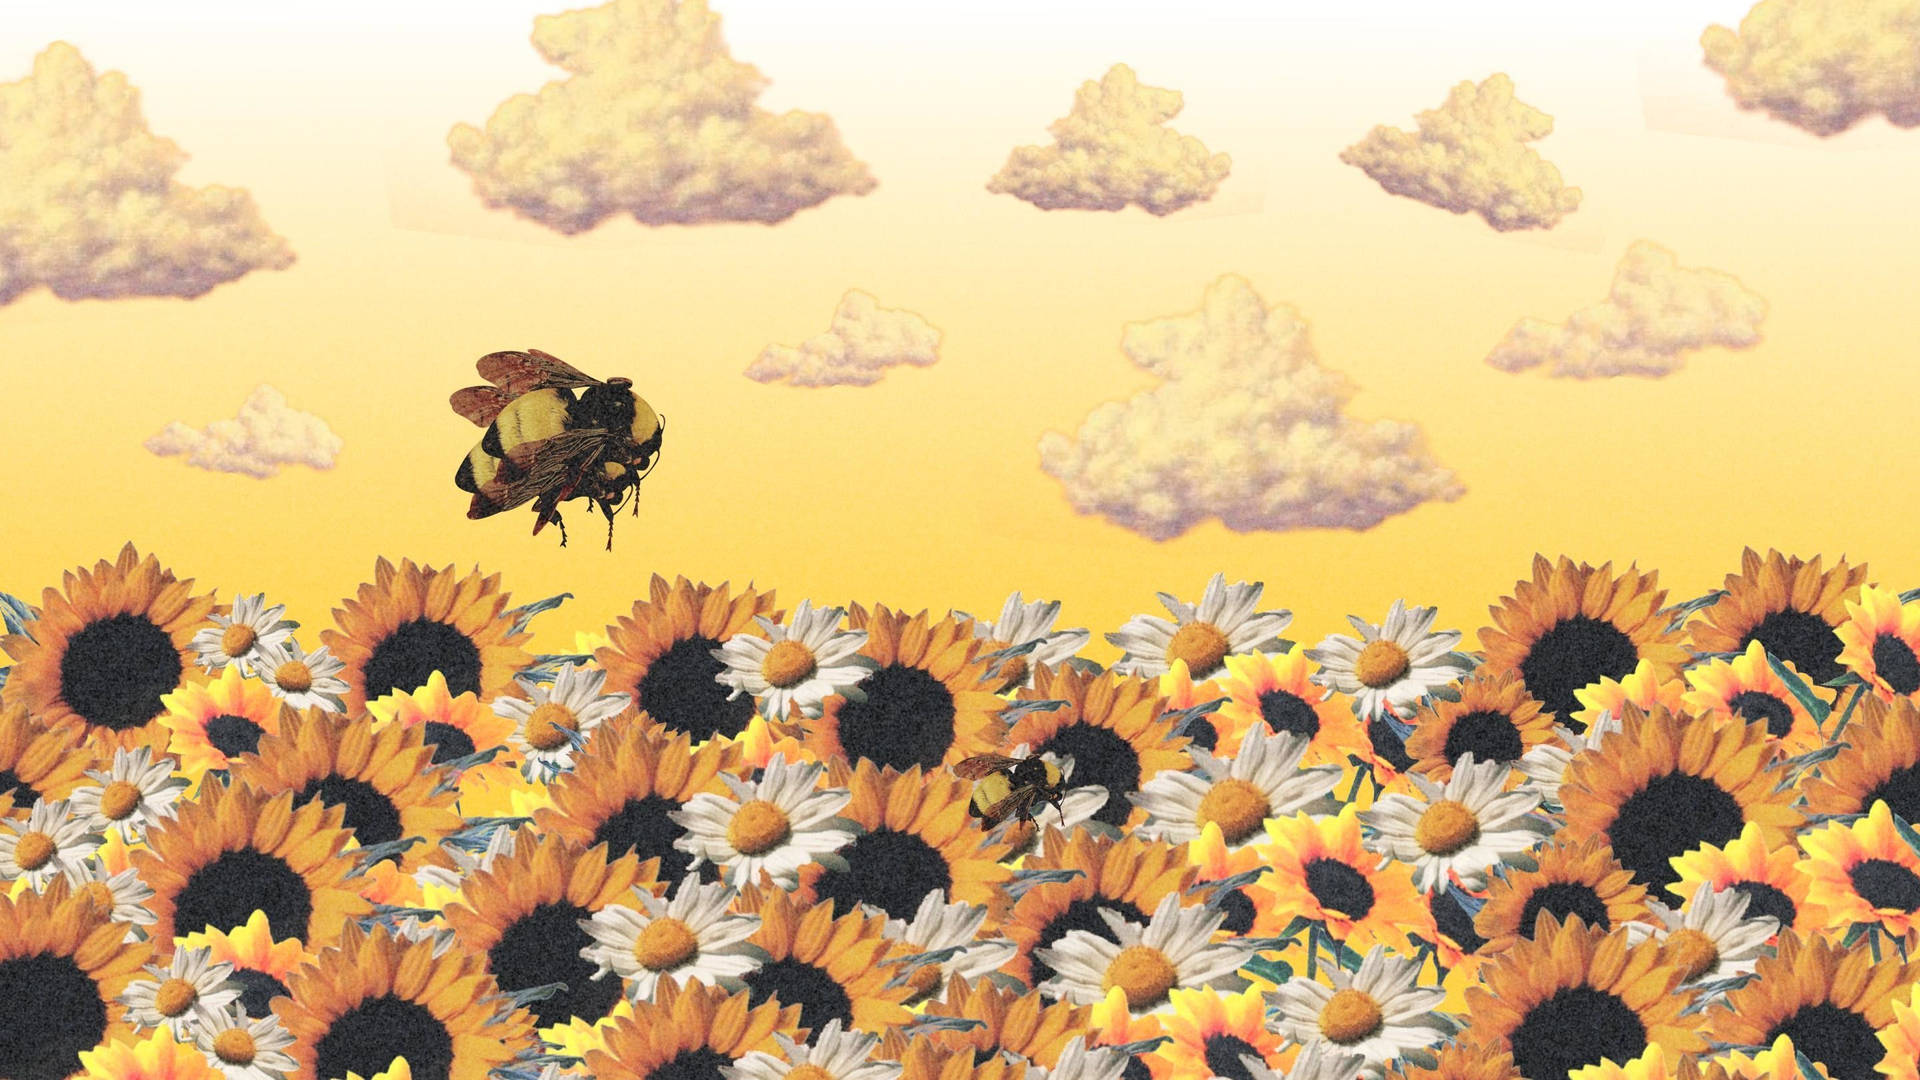 Cartoon Bee Over A Field Of Sunflowers Wallpaper